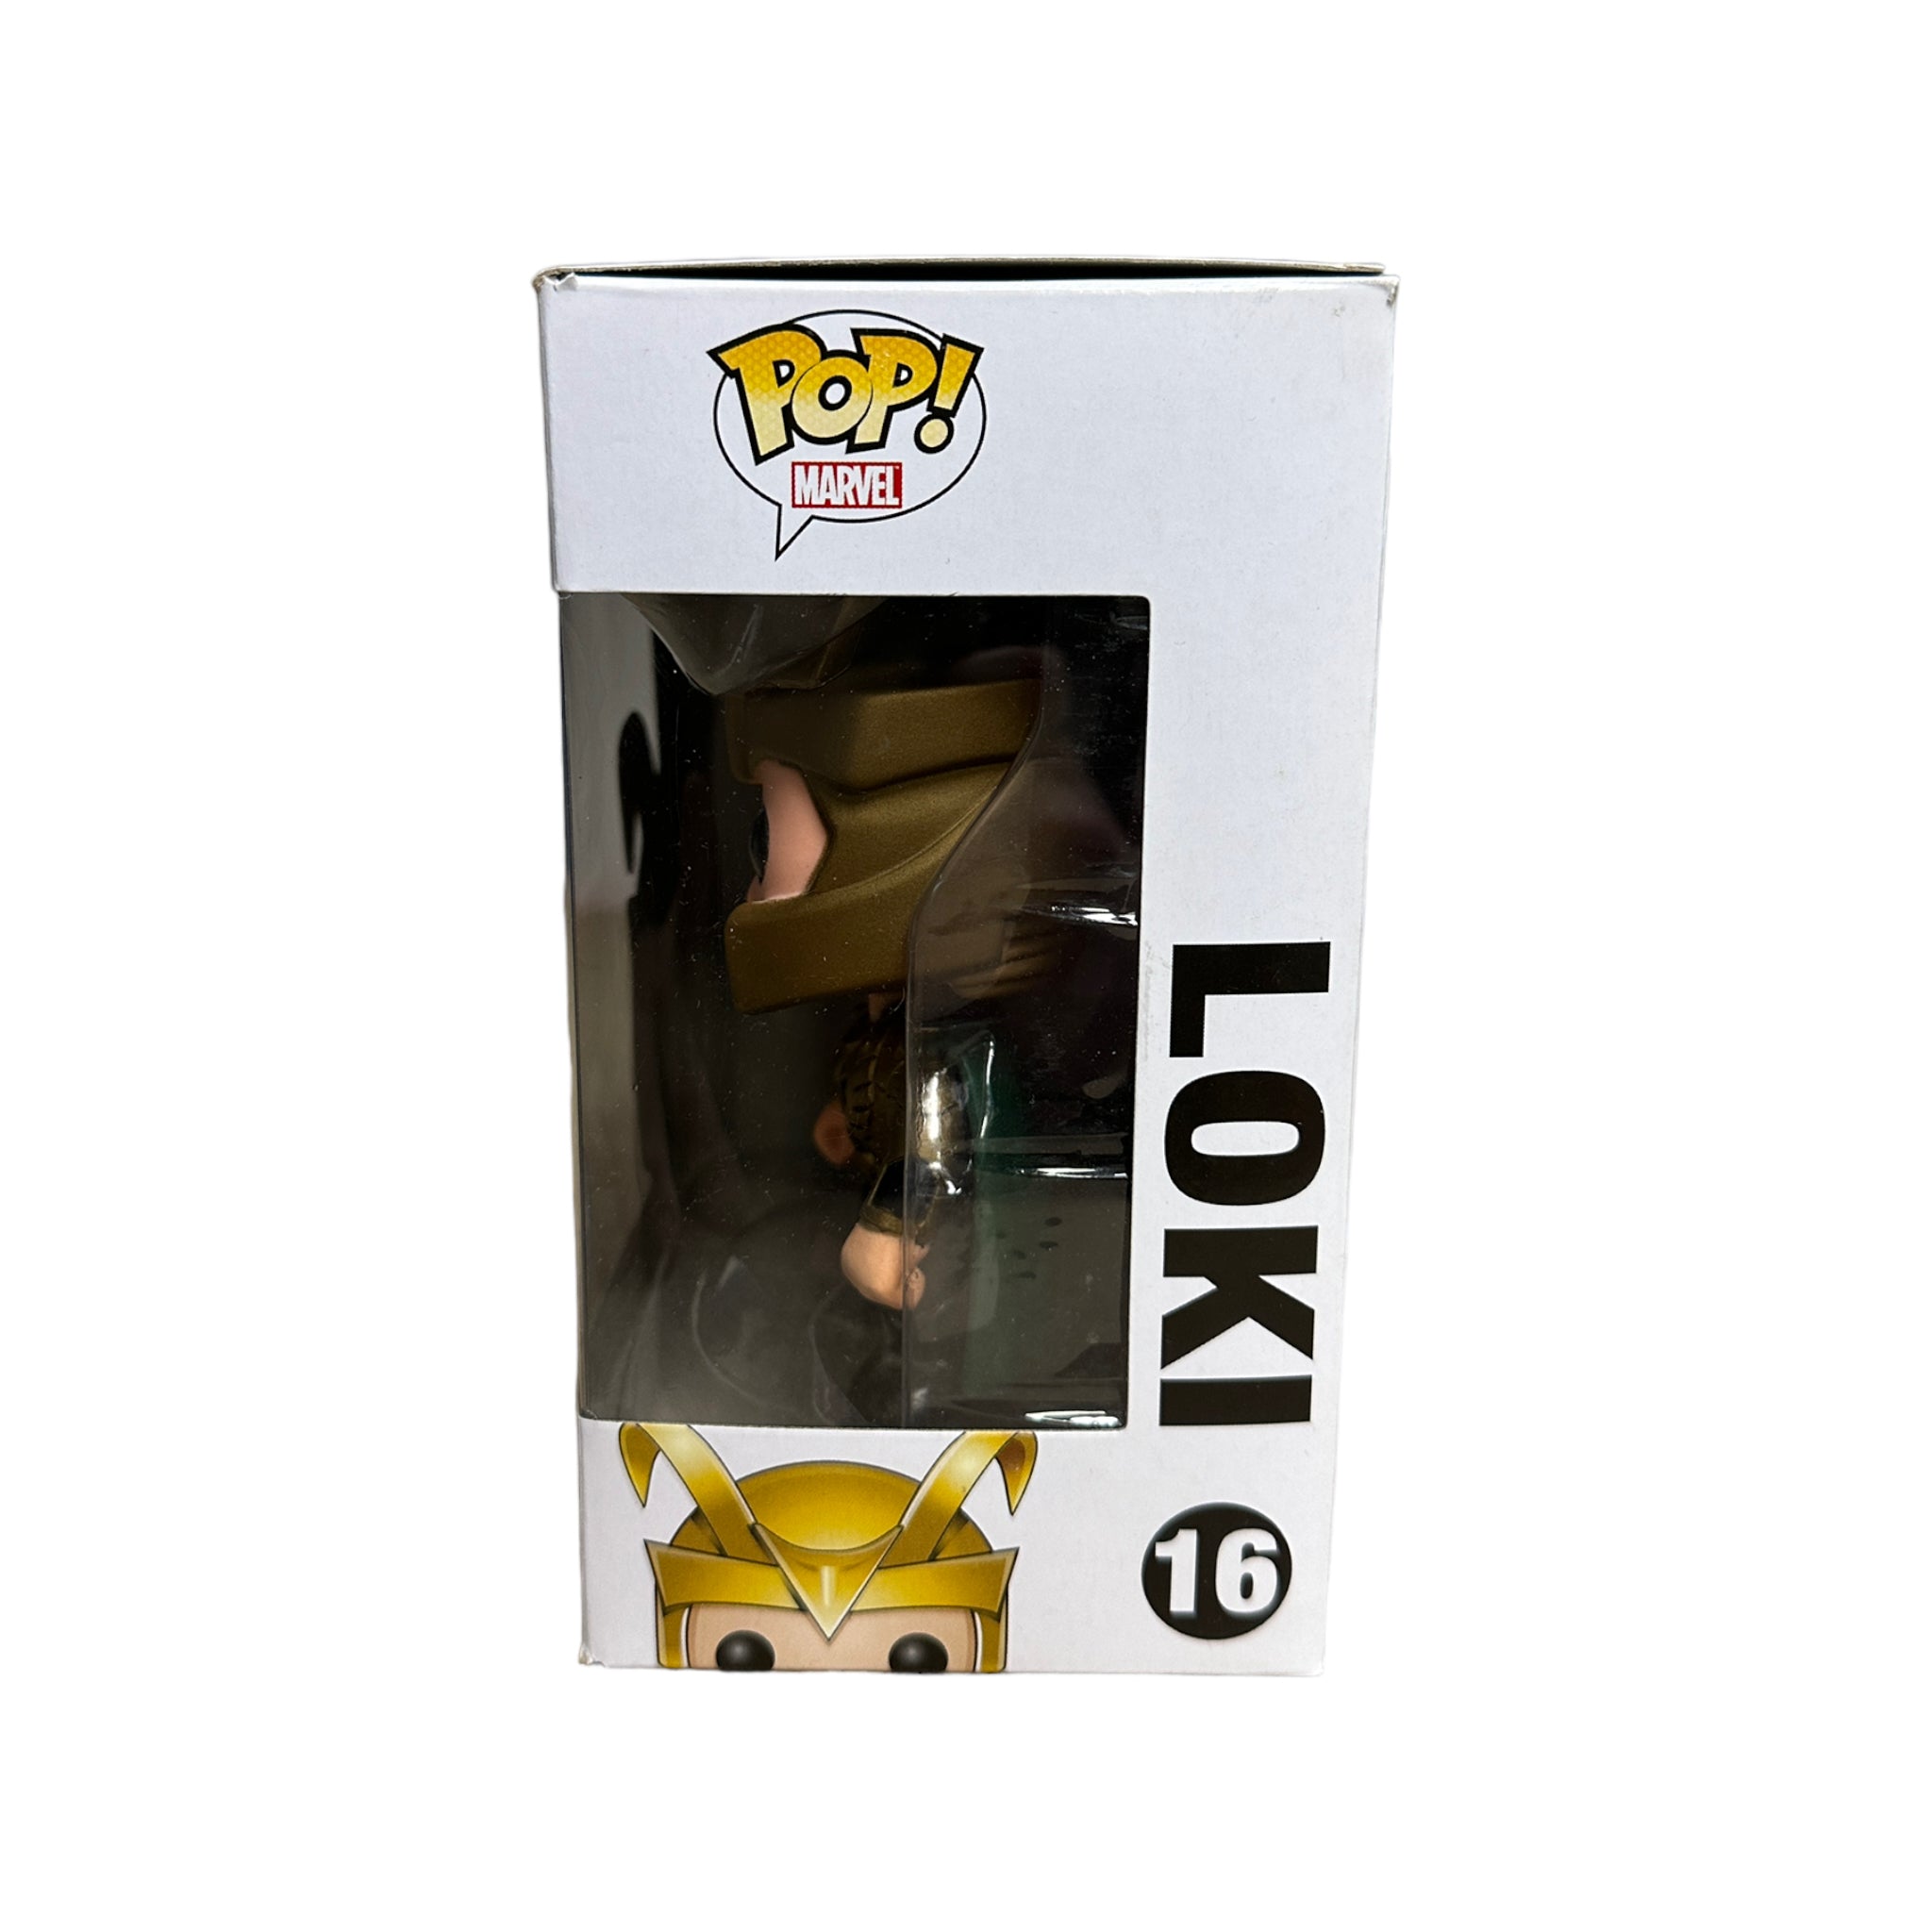 Loki #16 Funko Pop! - The Avengers - SDCC 2012 Exclusive LE480 Pcs - Condition 8.75/10